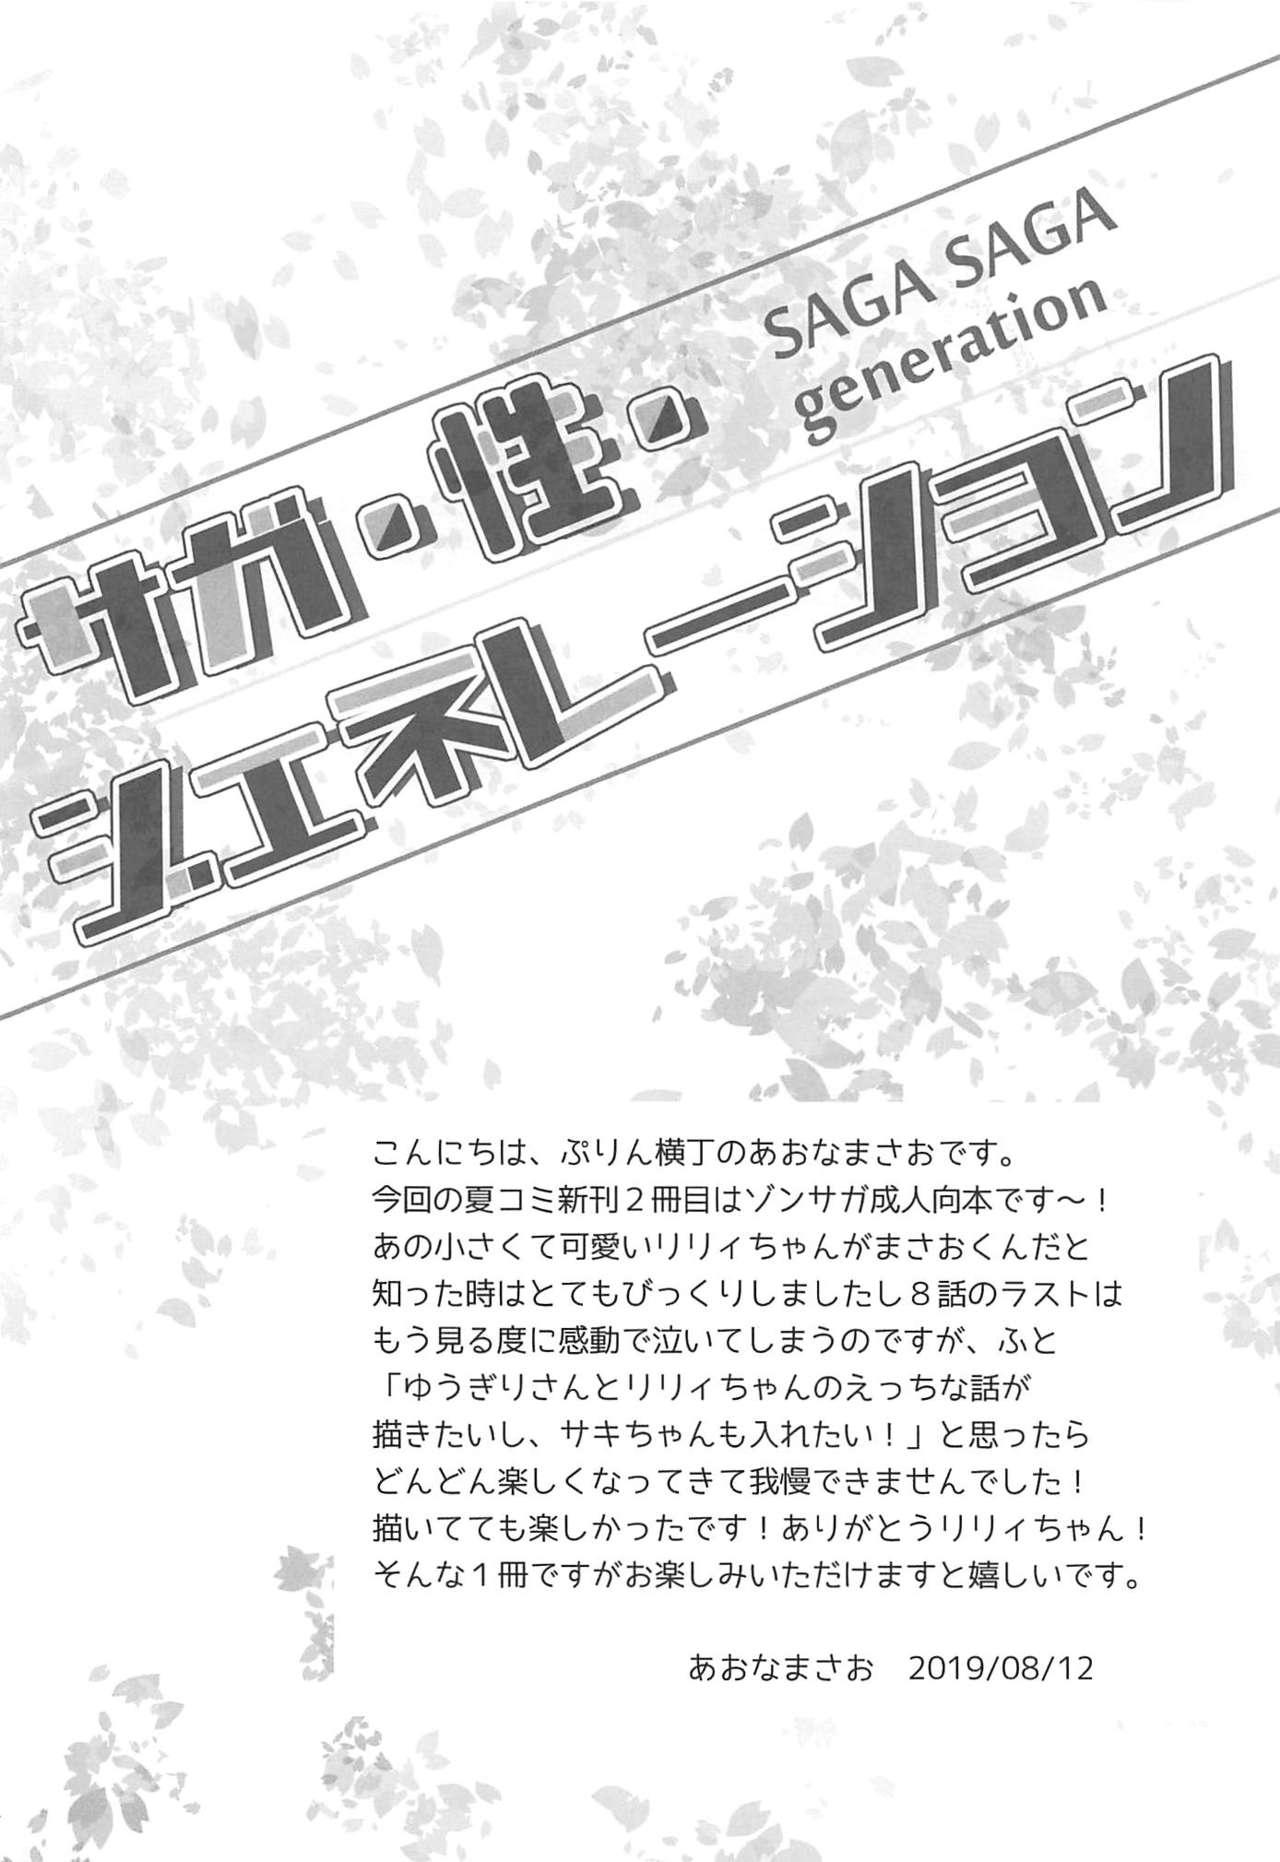 Roleplay SAGA SAGA generation - Zombie land saga 3way - Page 3